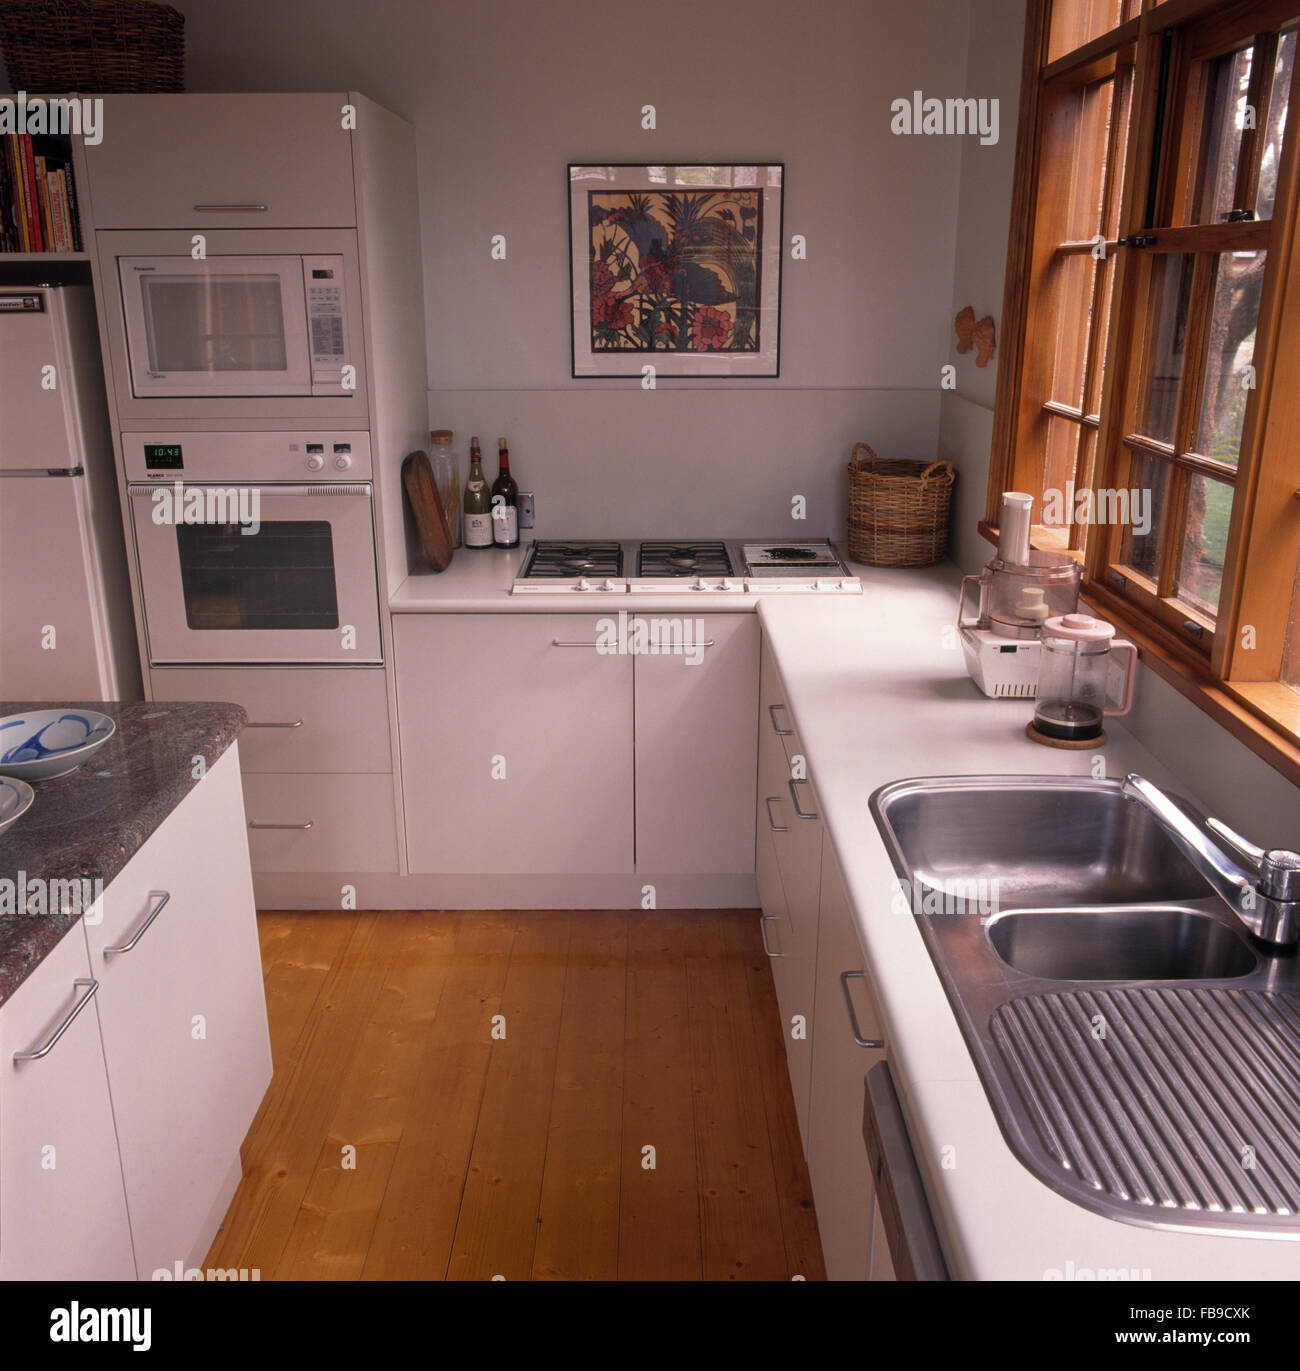 Edelstahl Doppelwaschbecken und Holzböden in eine weiße Küche mit Doppel-Backofen auf Augenhöhe Stockfoto